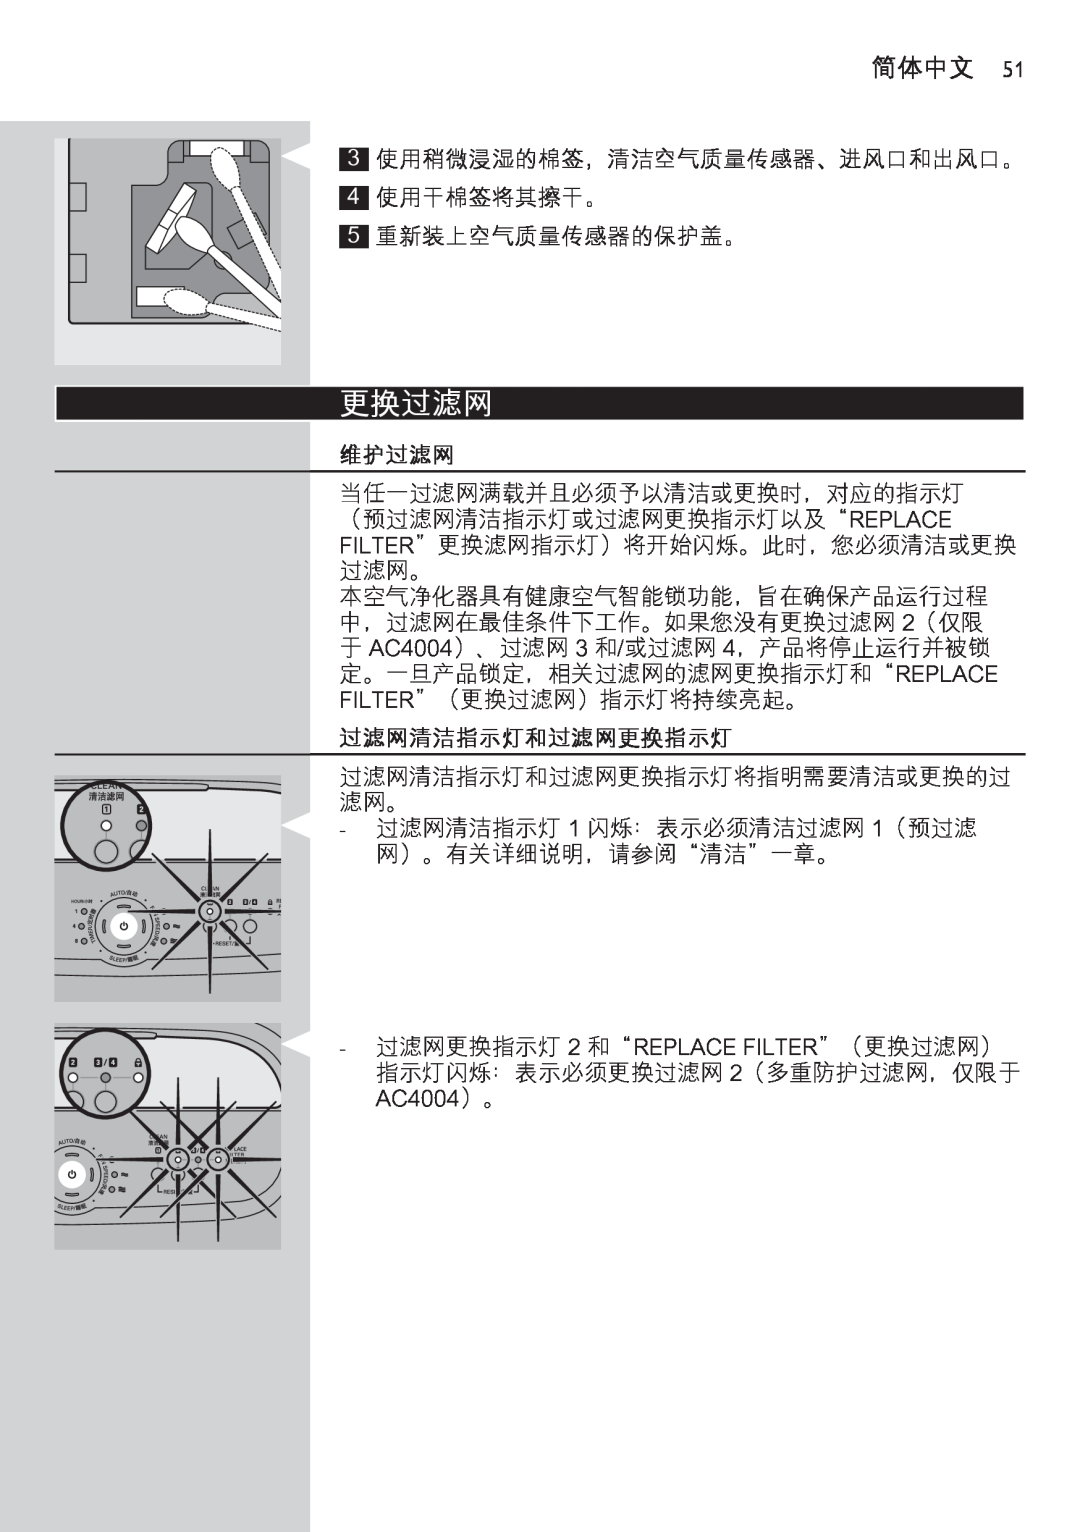 Philips AC4002 manual 更换过滤网, 维护过滤网, 过滤网清洁指示灯和过滤网更换指示灯, 简体中文 